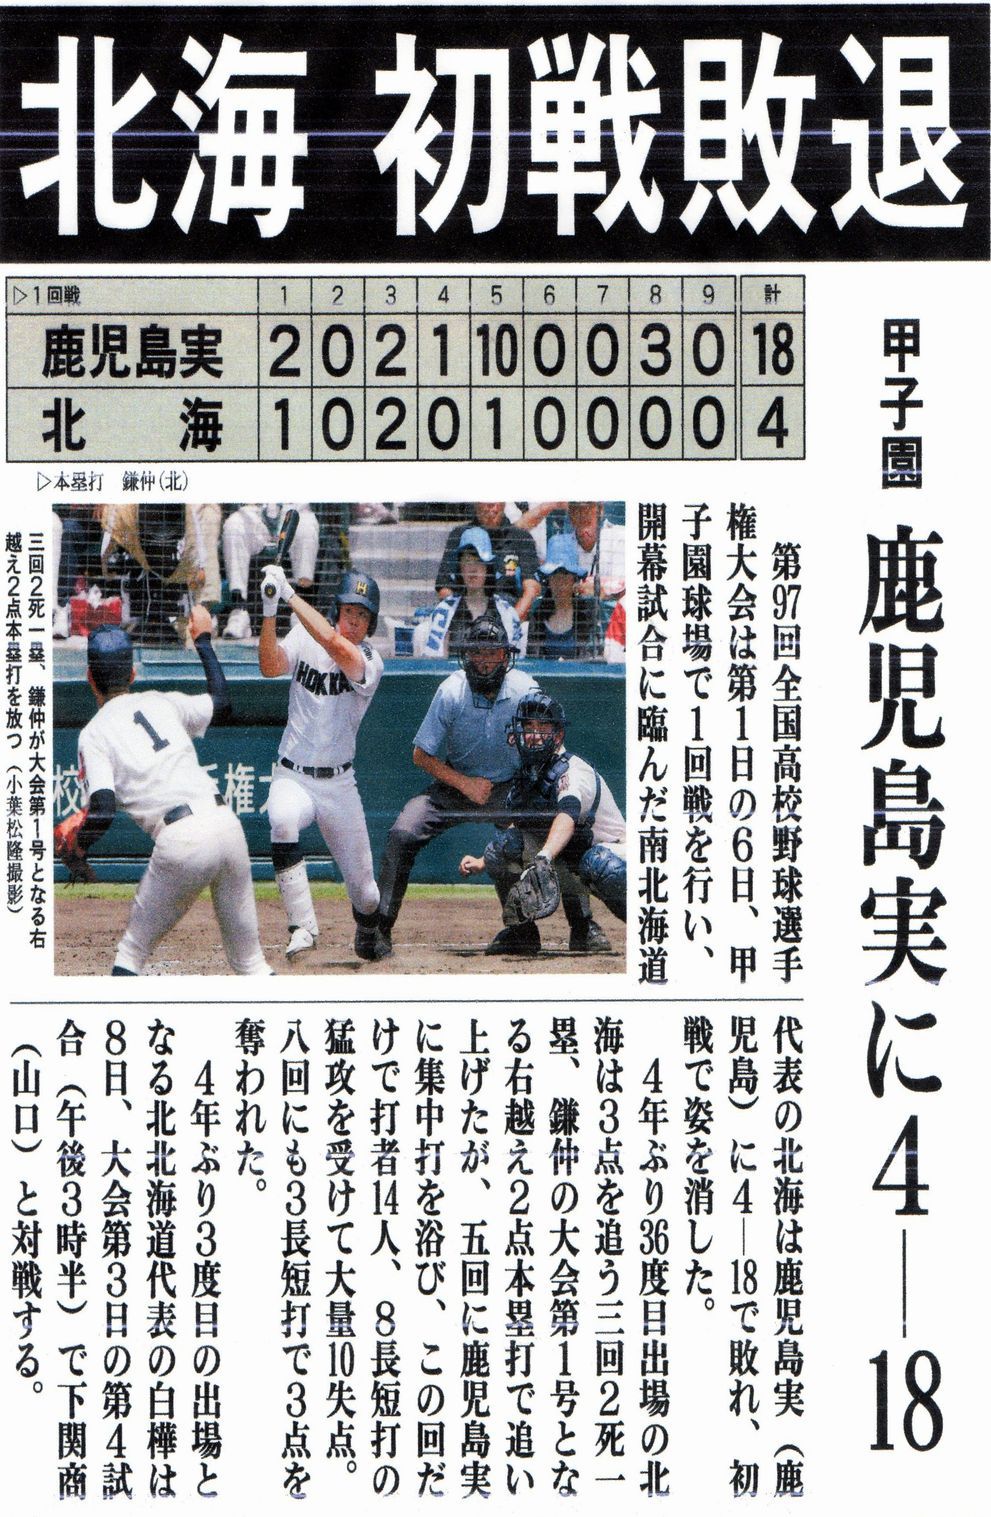 第97回全国高校野球選手権大会に、南北海道代表校の北海校が登場しましたが、初戦敗退となりました。